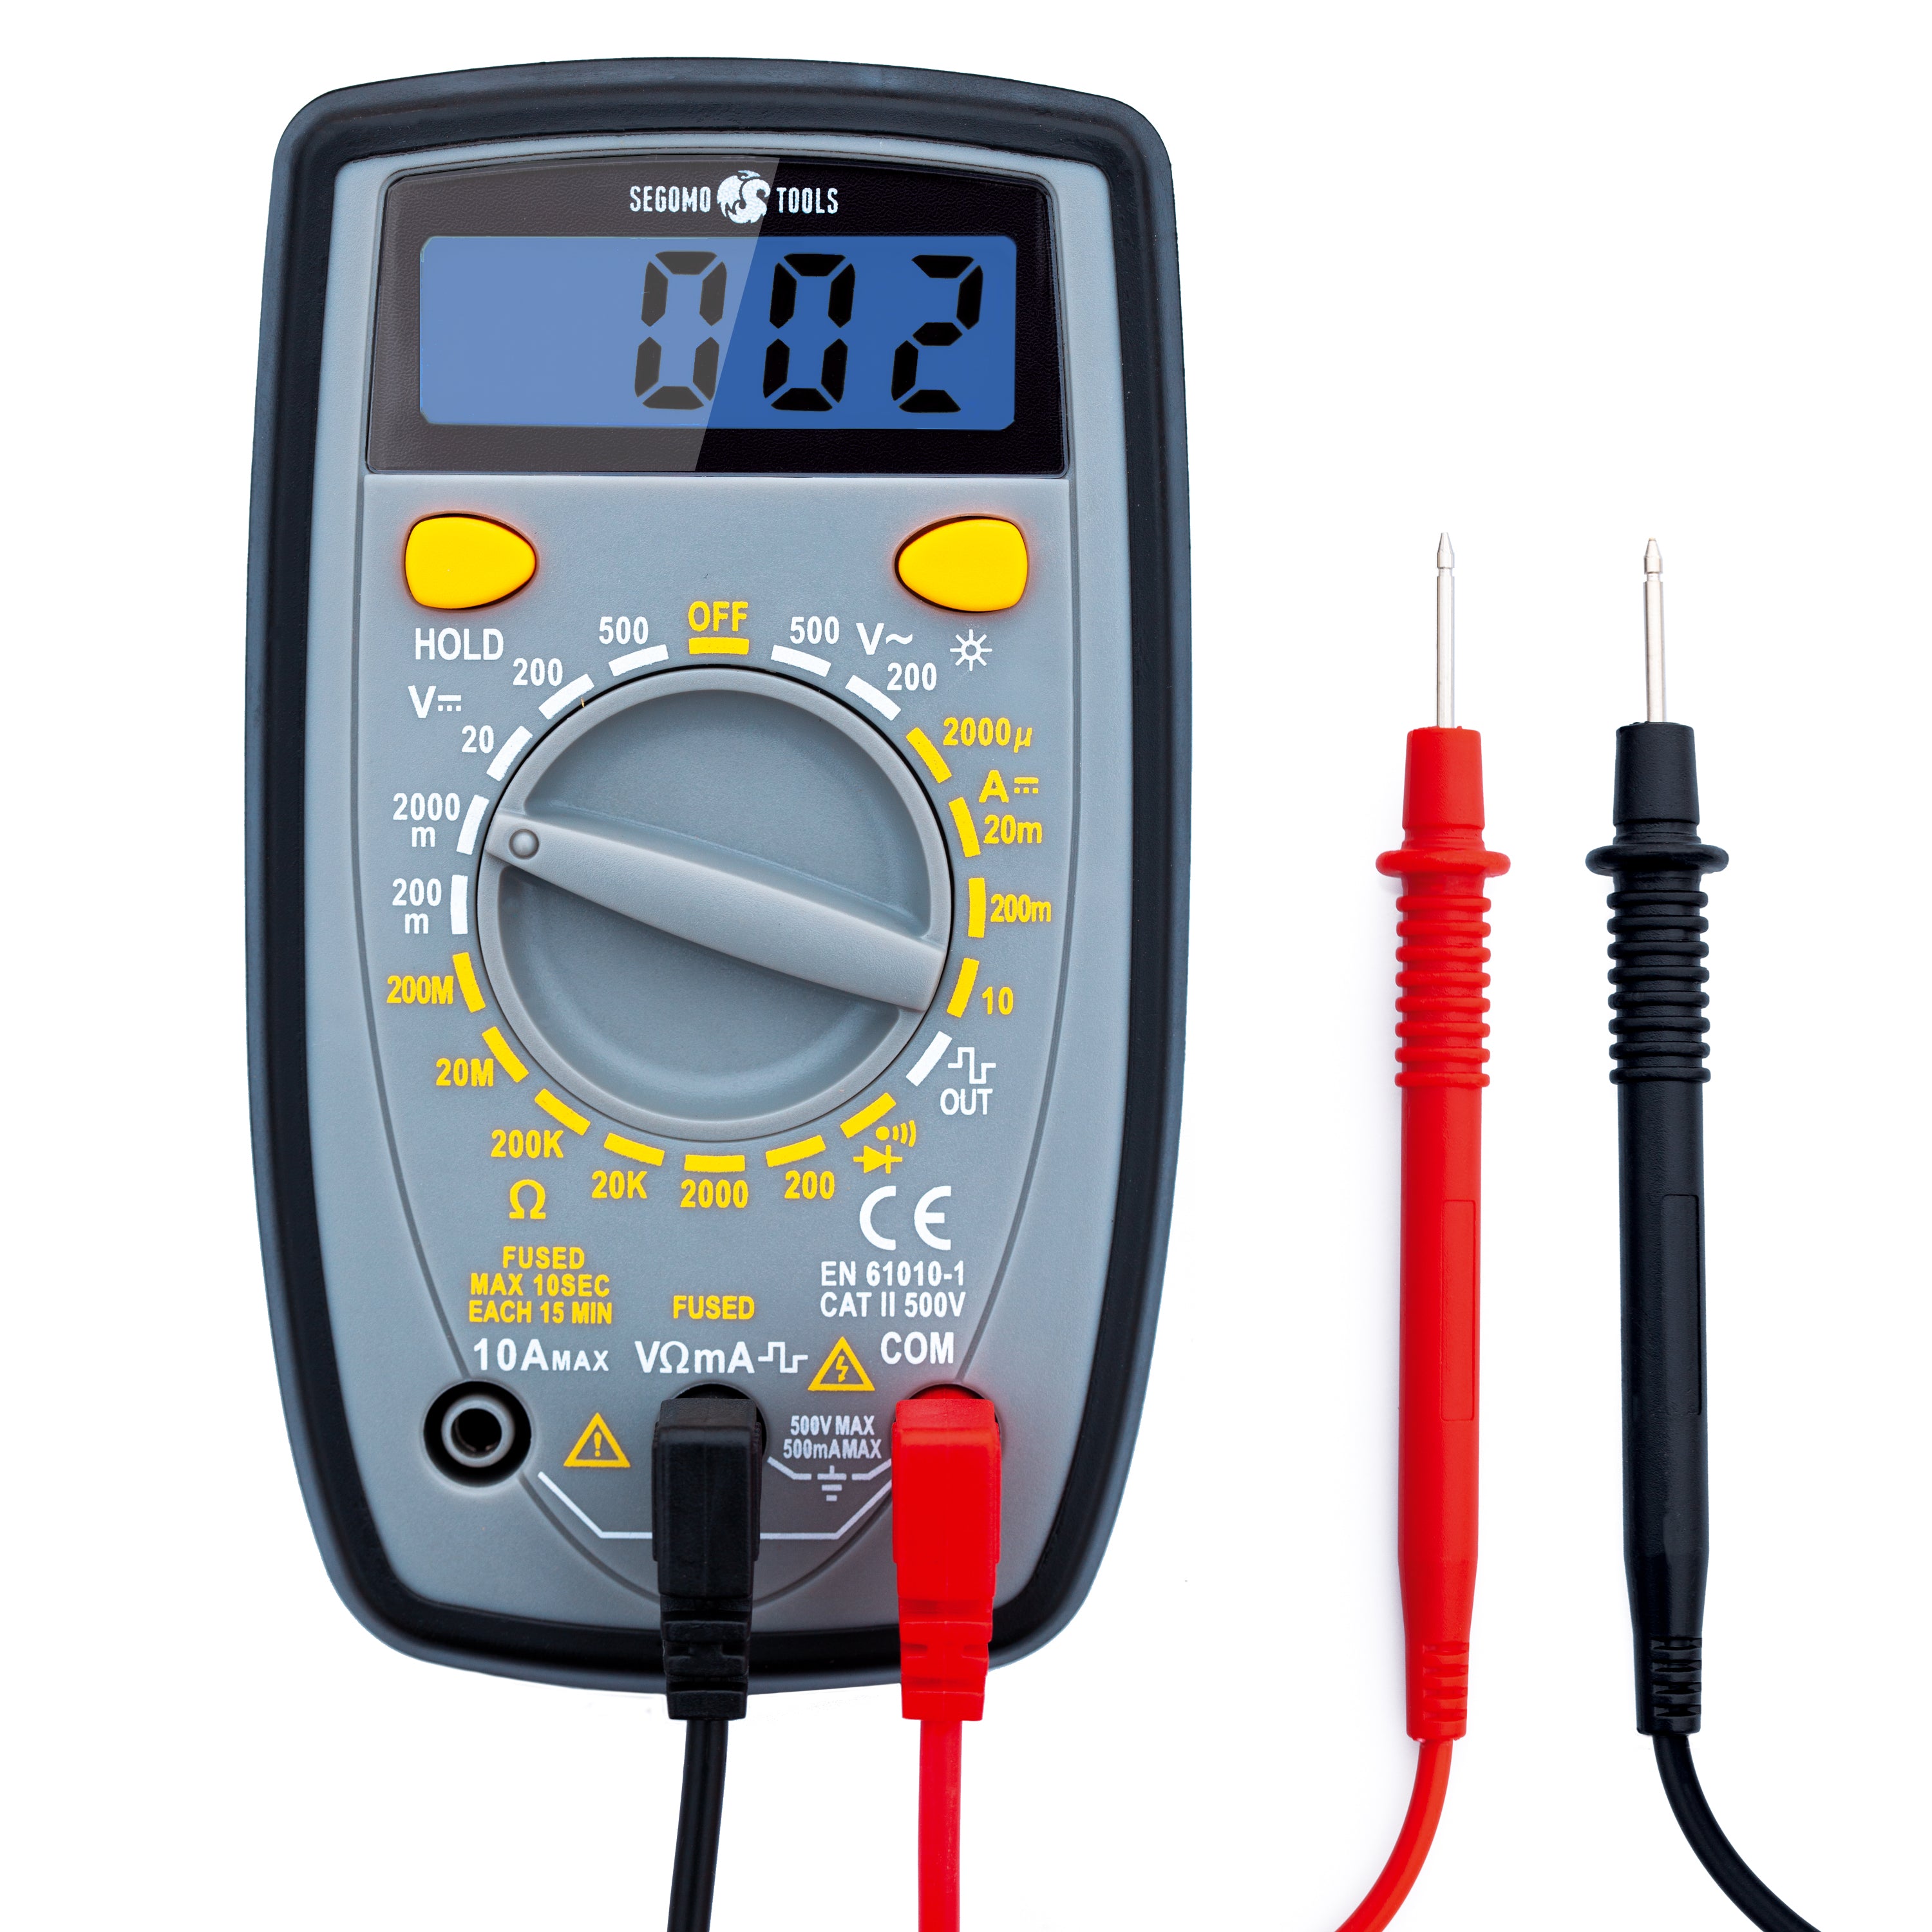 Klein Tools Pince multimètre et kit de test électrique